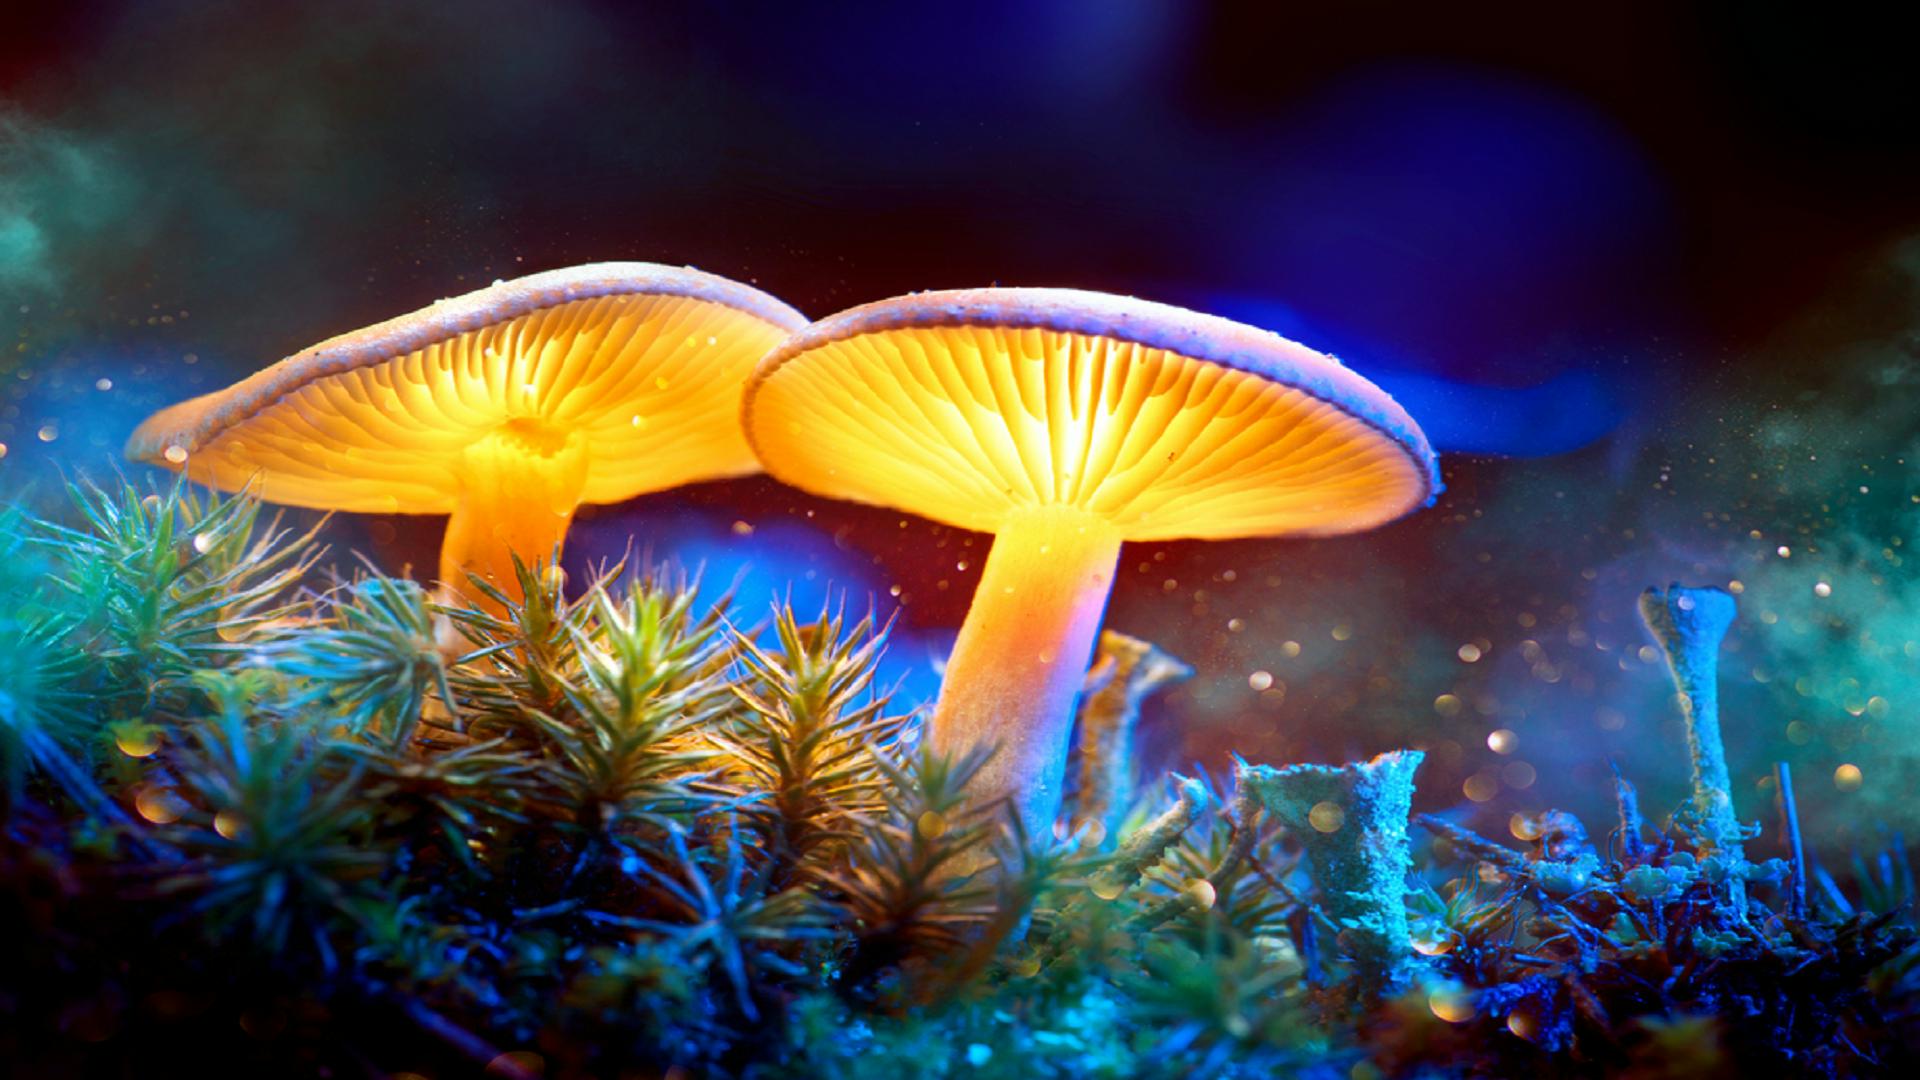 Magic Mushroom Wallpaper